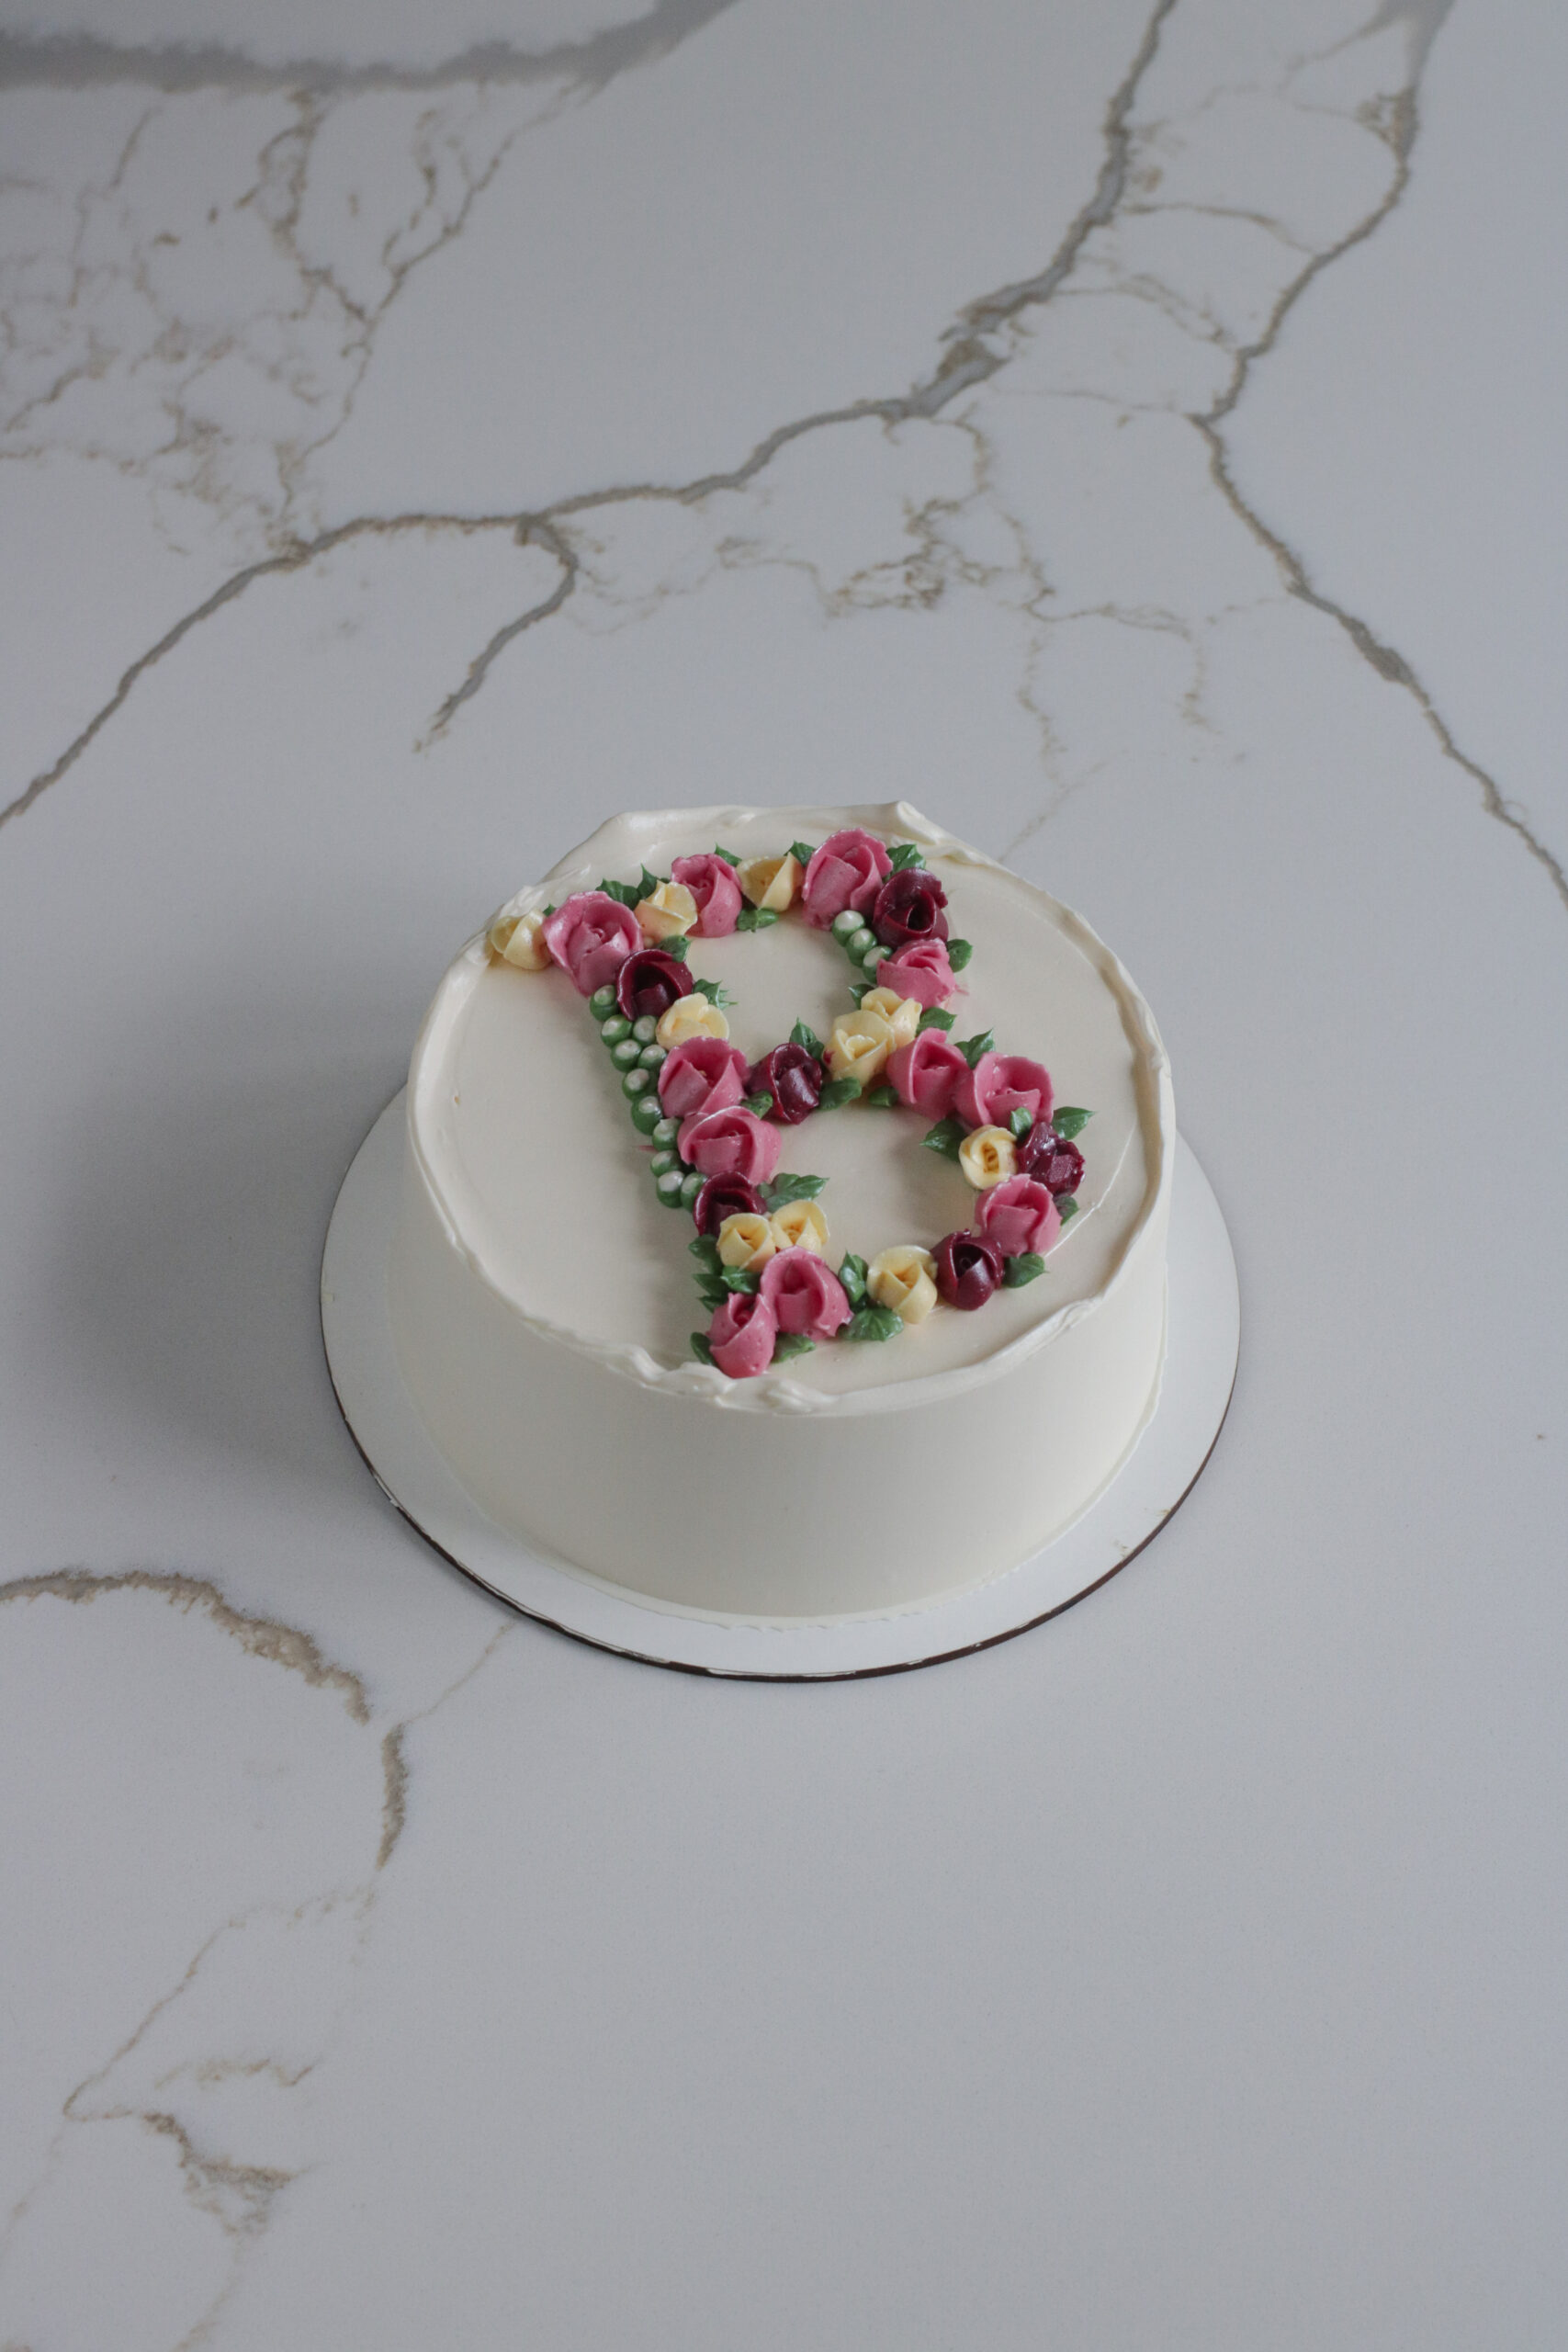 Flowering Cake